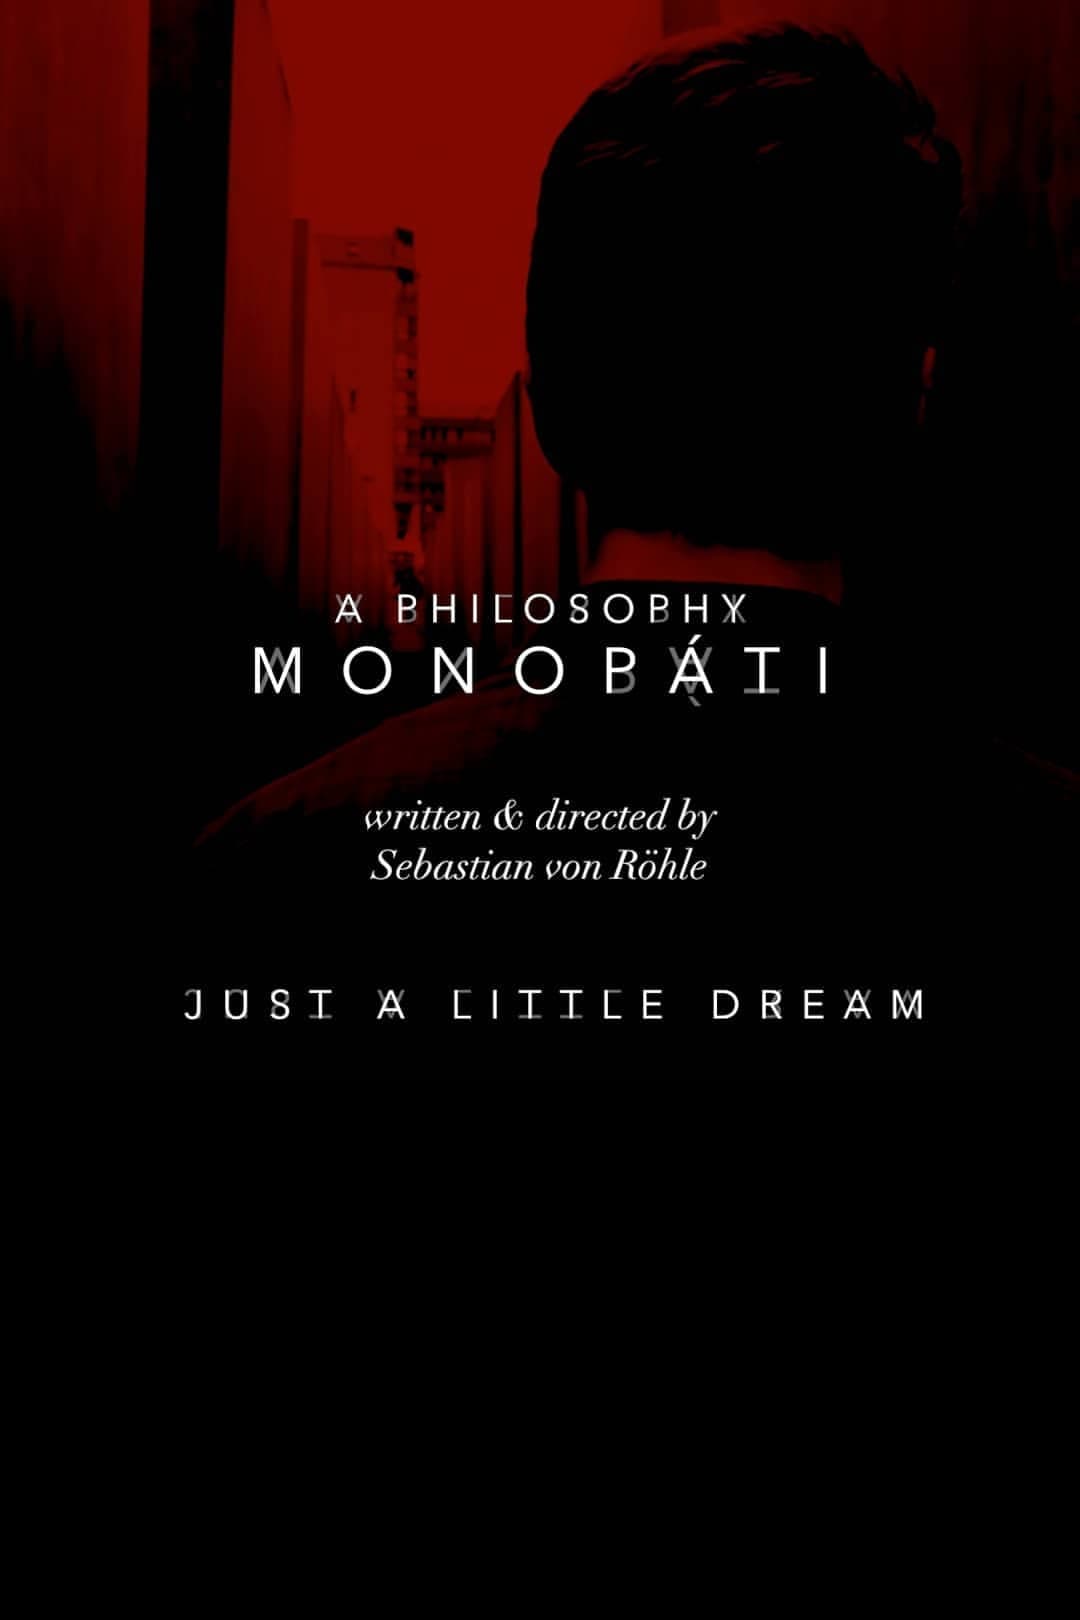 A Philosophy - Monopáti